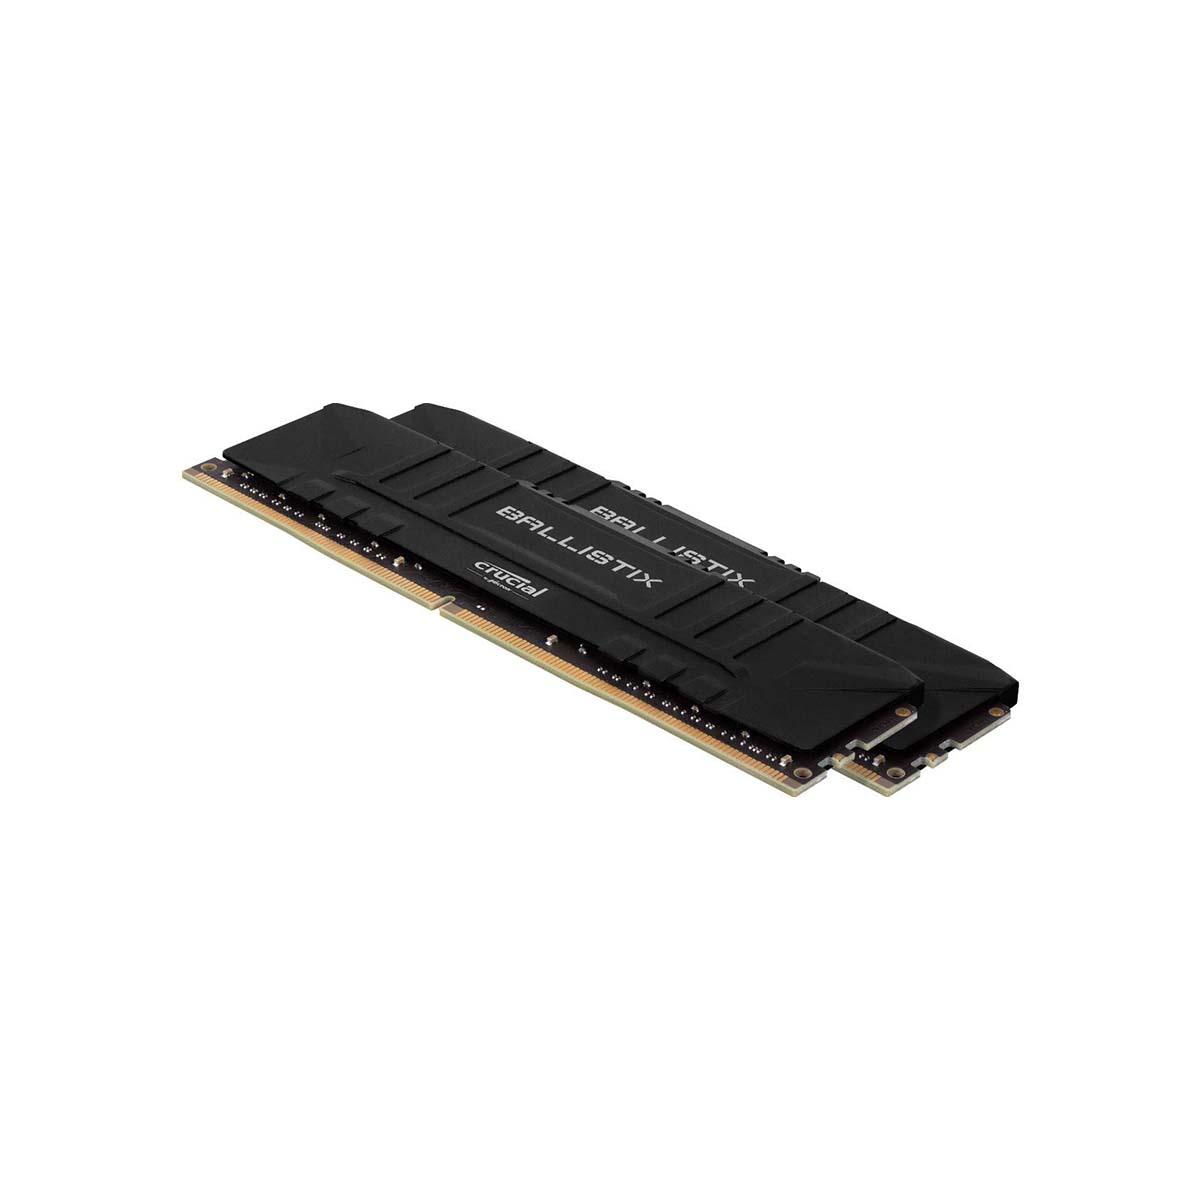 MEMORIA DIMM DDR4 CRUCIAL BALLISTIX (BL2K8G26C16U4B) 16GB KIT (2X8GB) 2666MHZ, BLACK HEATSINK, CL15 - BL2K8G26C16U4B